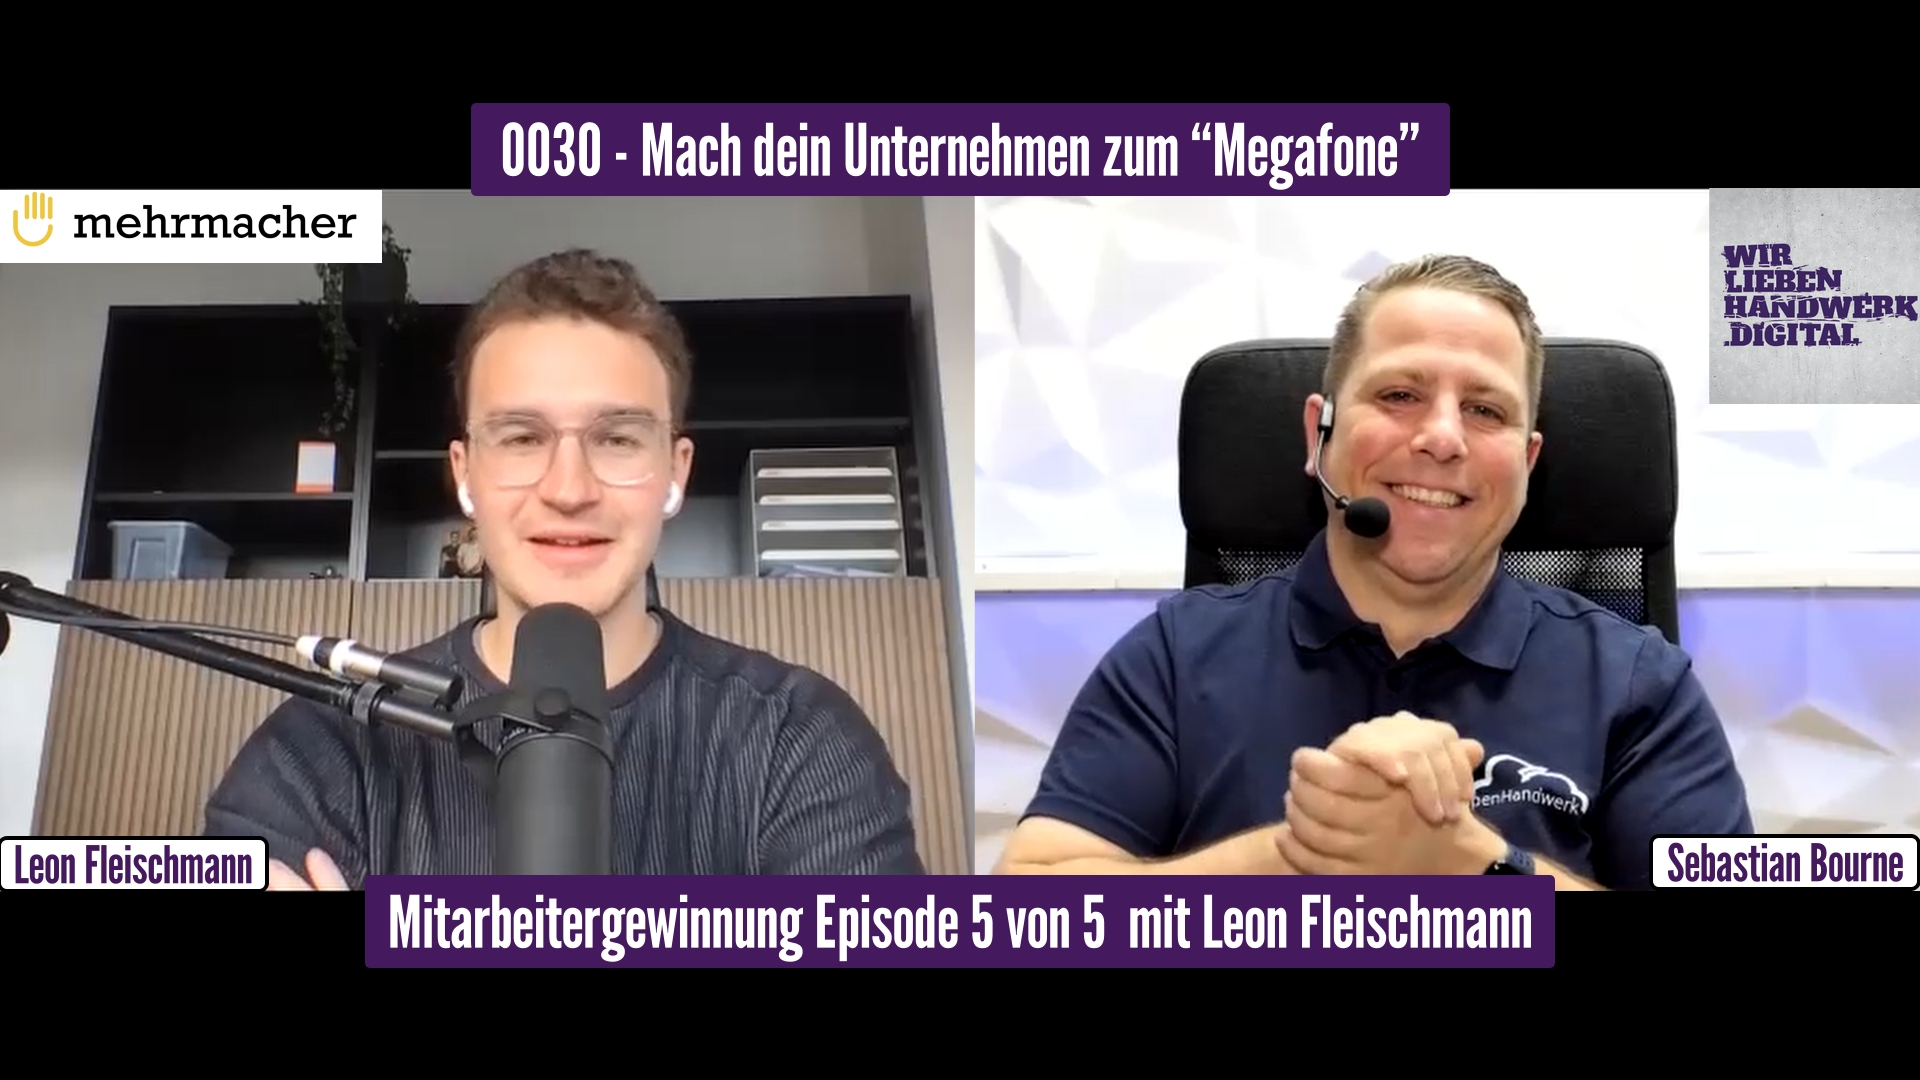 Mitarbeitergewinnung - Fachkräftemangel im Handwerk - "Mach dein Unternehmen zum Megafone" - Podcast Episode mit Leon Fleischmann von mehrmacher GmbH im WirliebenHandwerk.digital Podcast